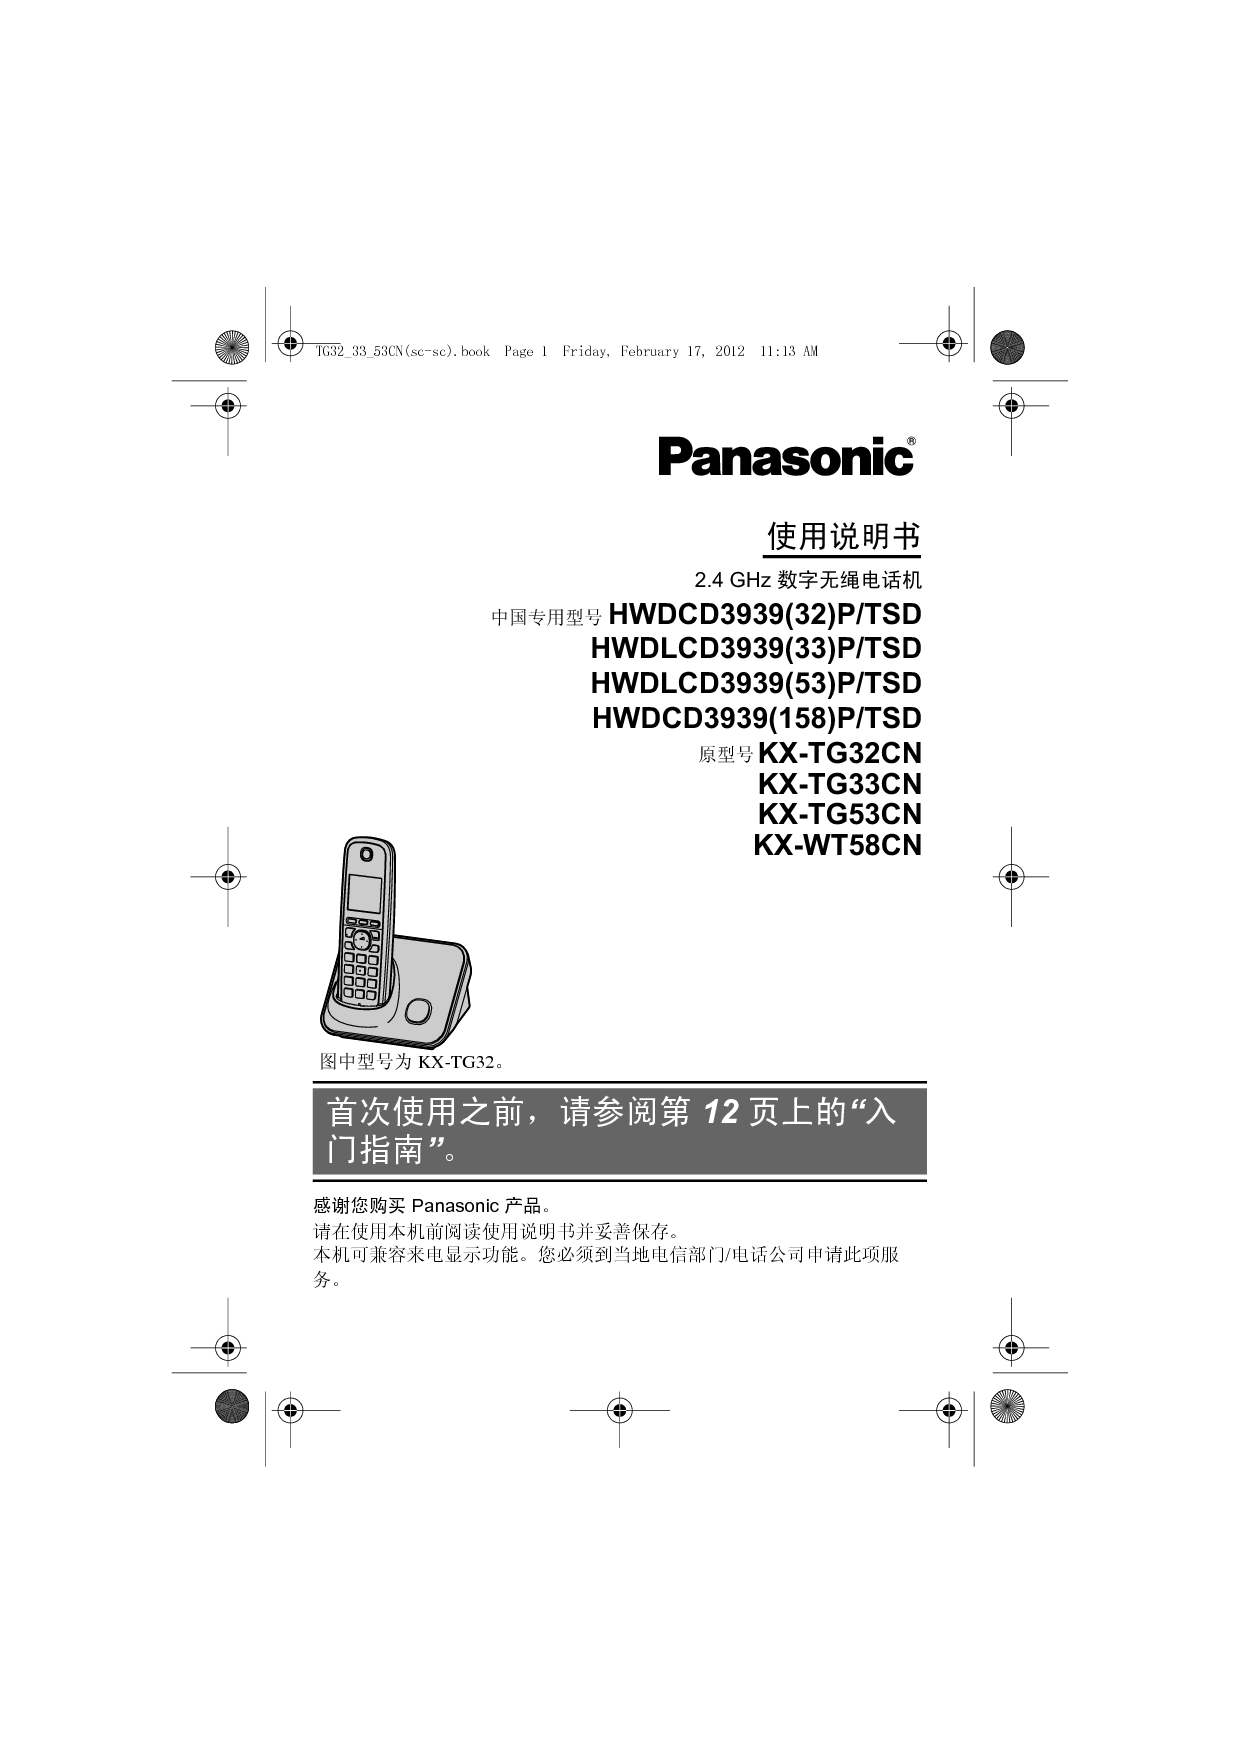 松下 Panasonic HWDCD3939(158)P/TSD, KX-TG32CN 说明书 封面